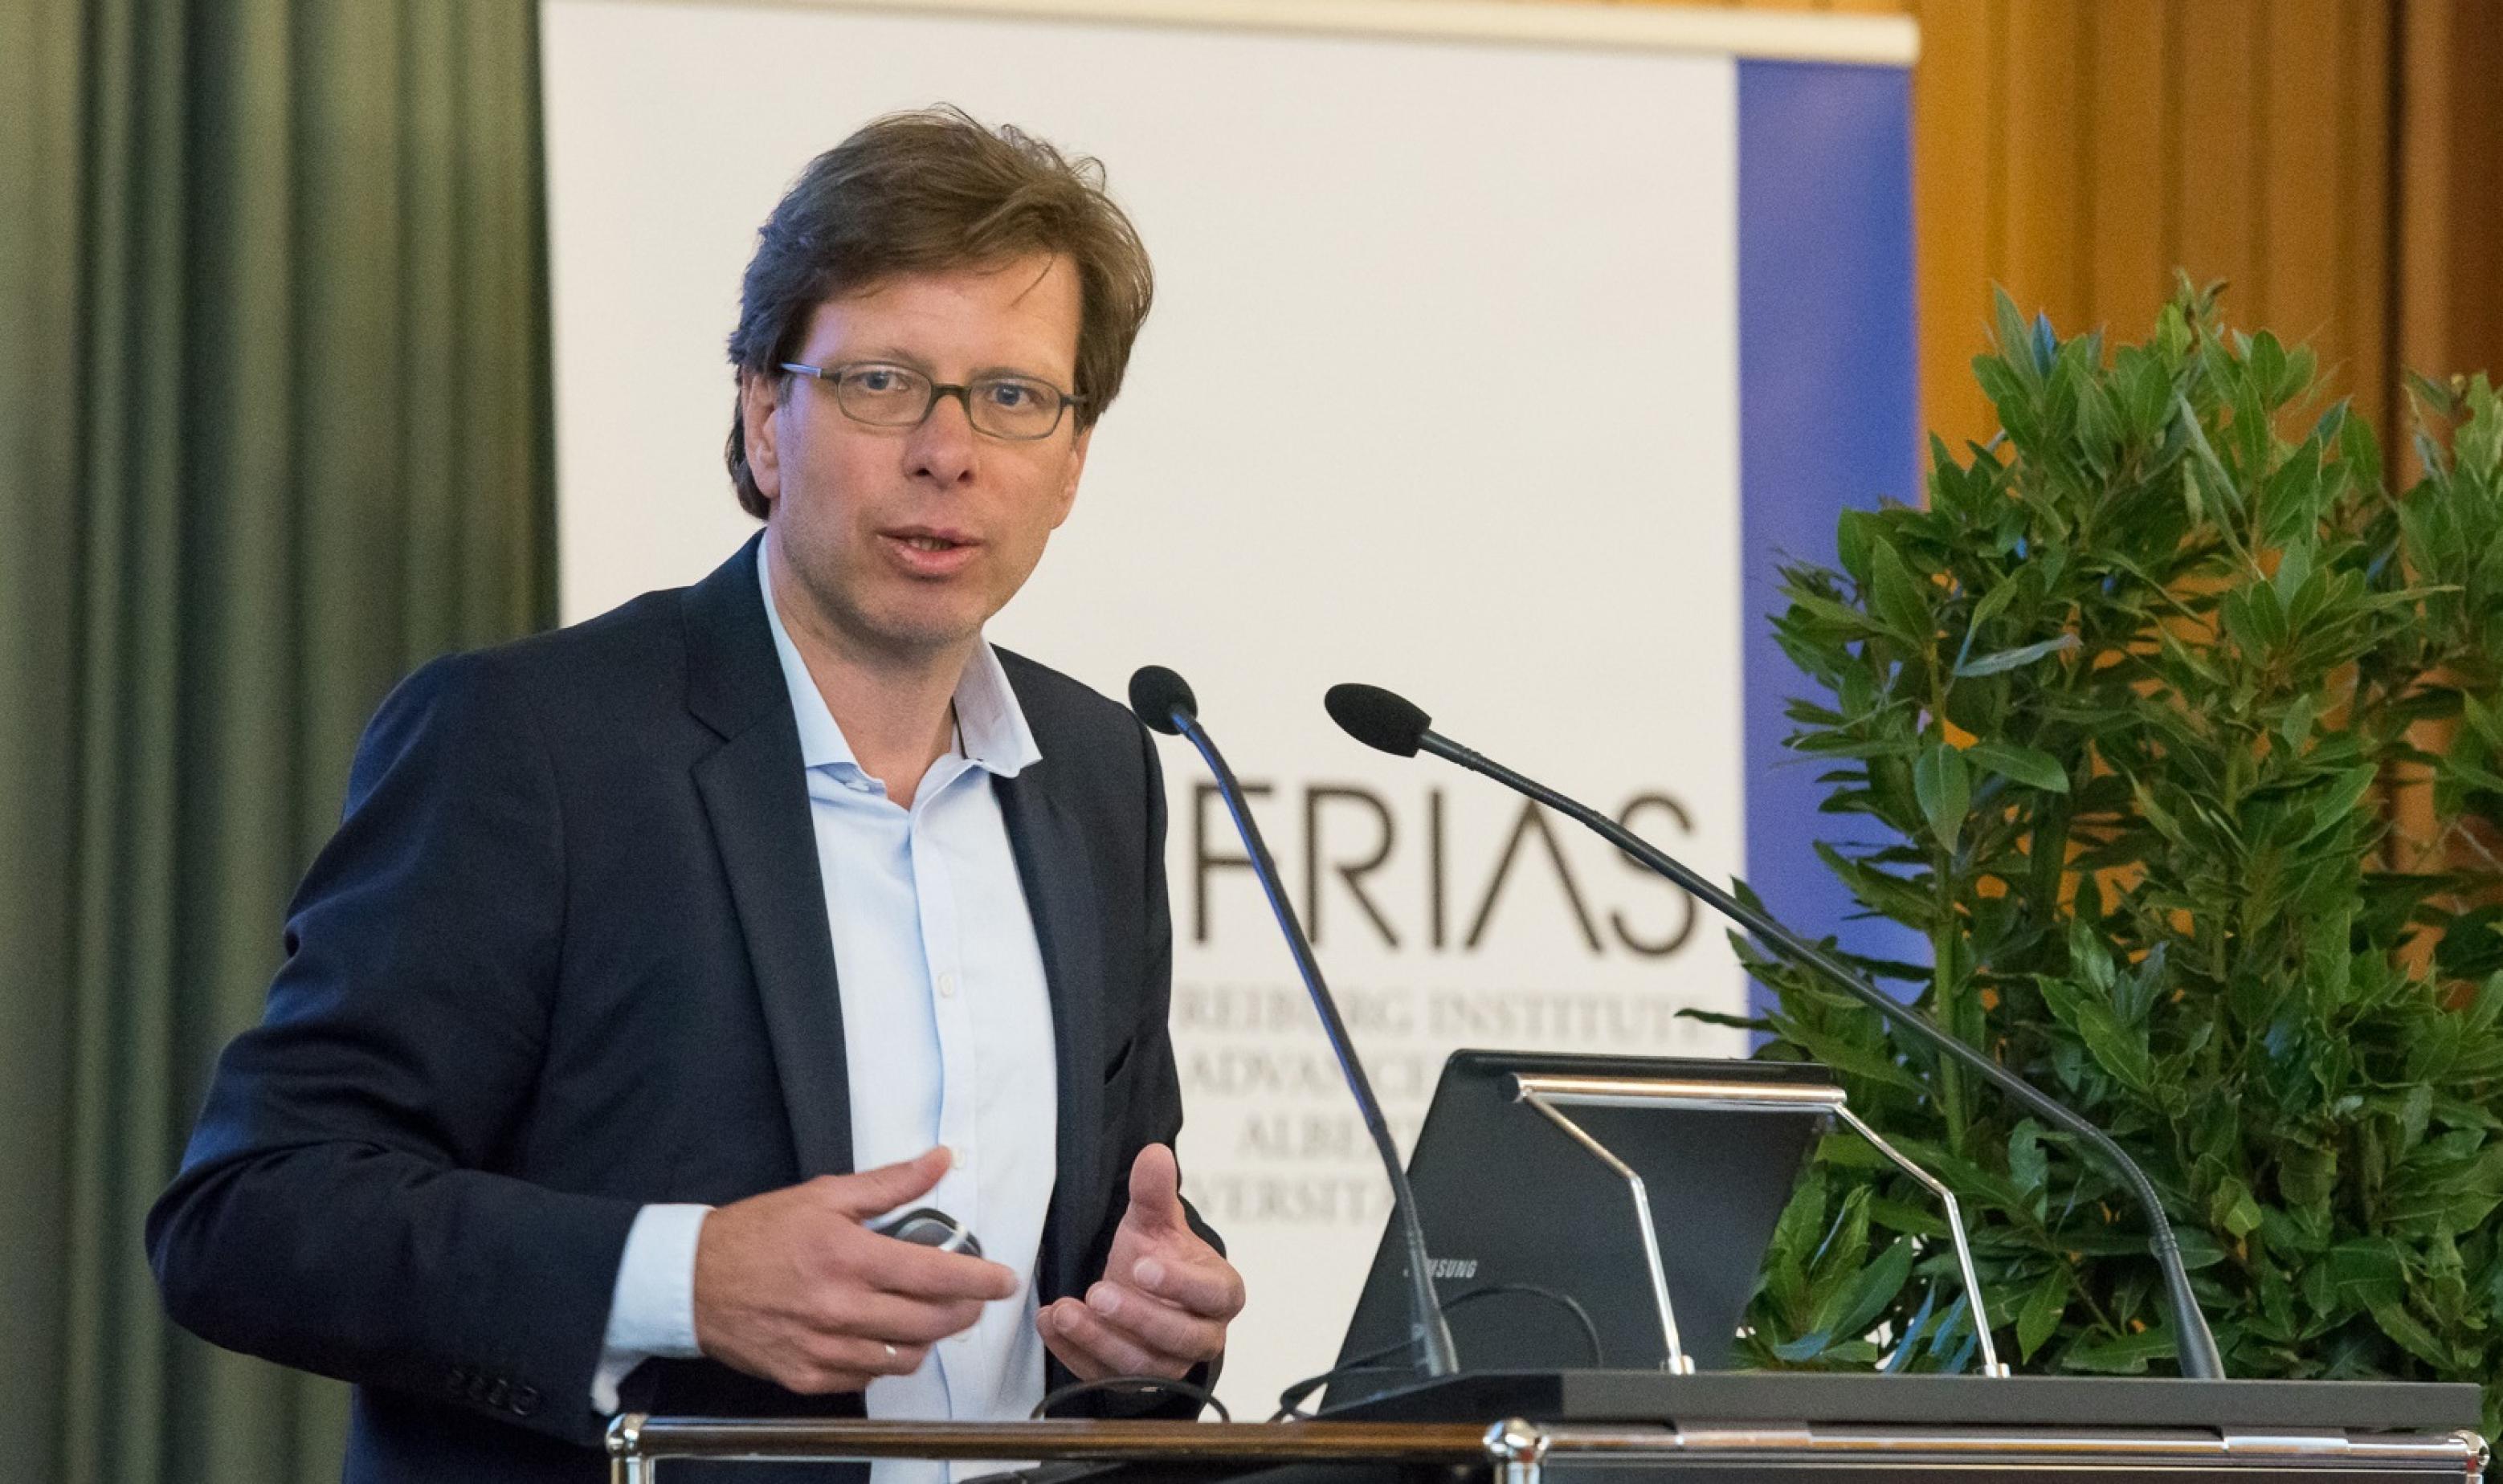 Der Redner und Buchautor Dr. Peter Spork hält einen öffentlichen Vortrag in der Aula der Freiburger Universität.